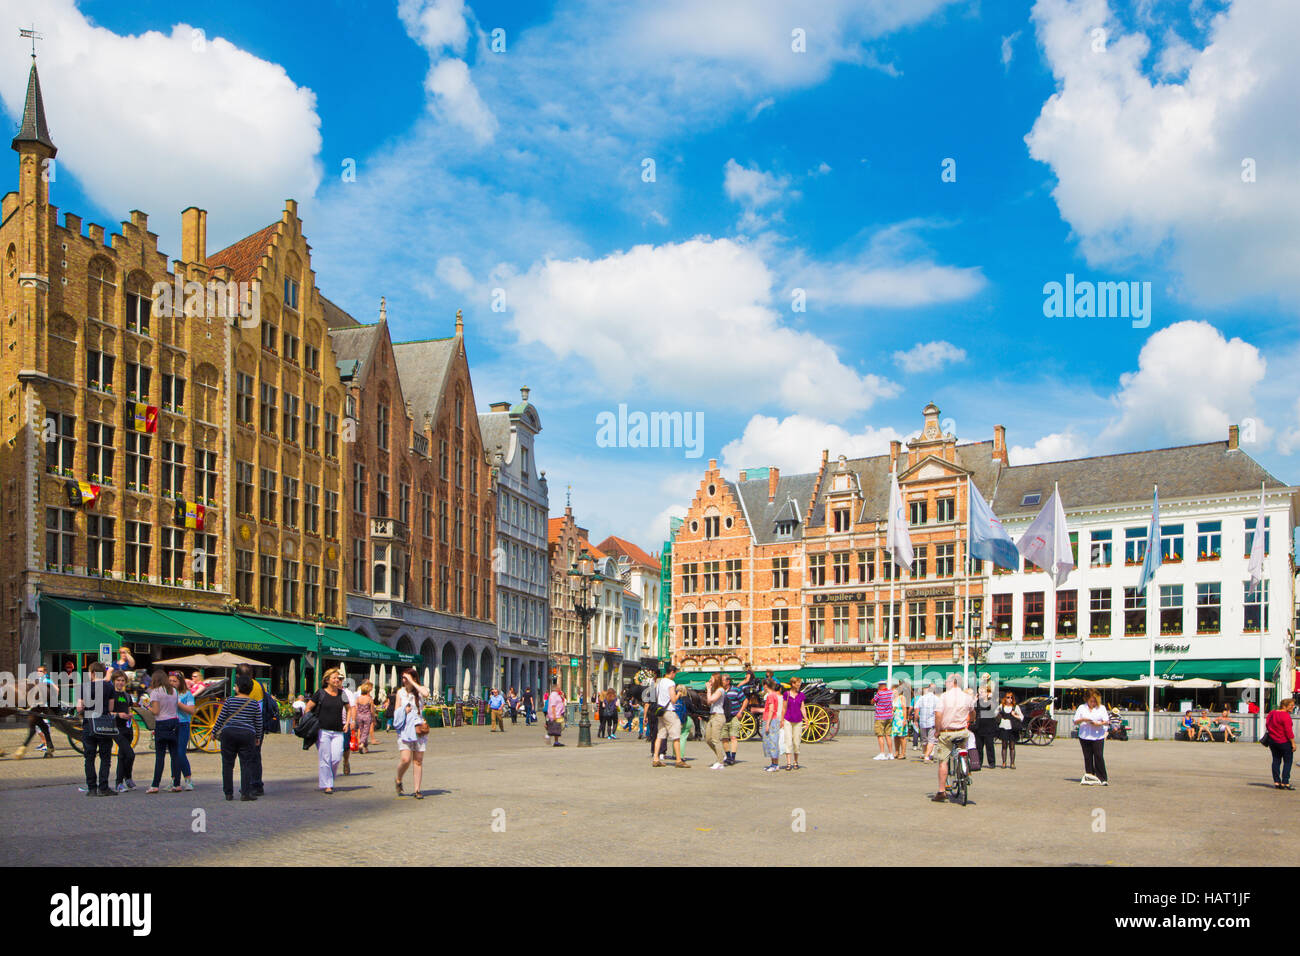 BRUGES, BELGIUM - JUNE 13, 2014: The Grote markt square. Stock Photo